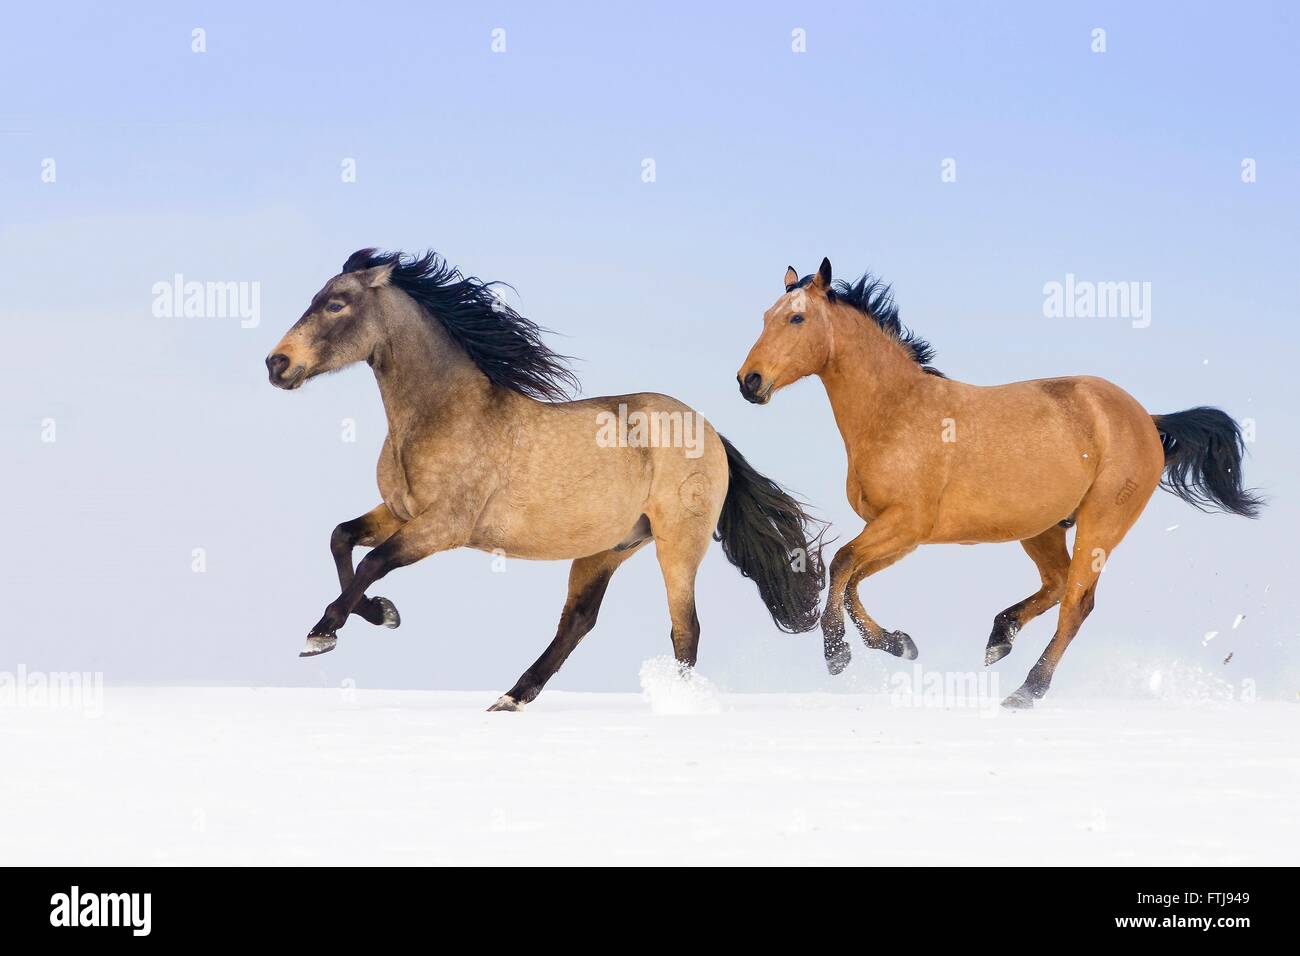 Cheval Kinky et pur cheval espagnol, andalou. Paire de chevaux galopant sur un dun pâturages enneigés. Allemagne Banque D'Images